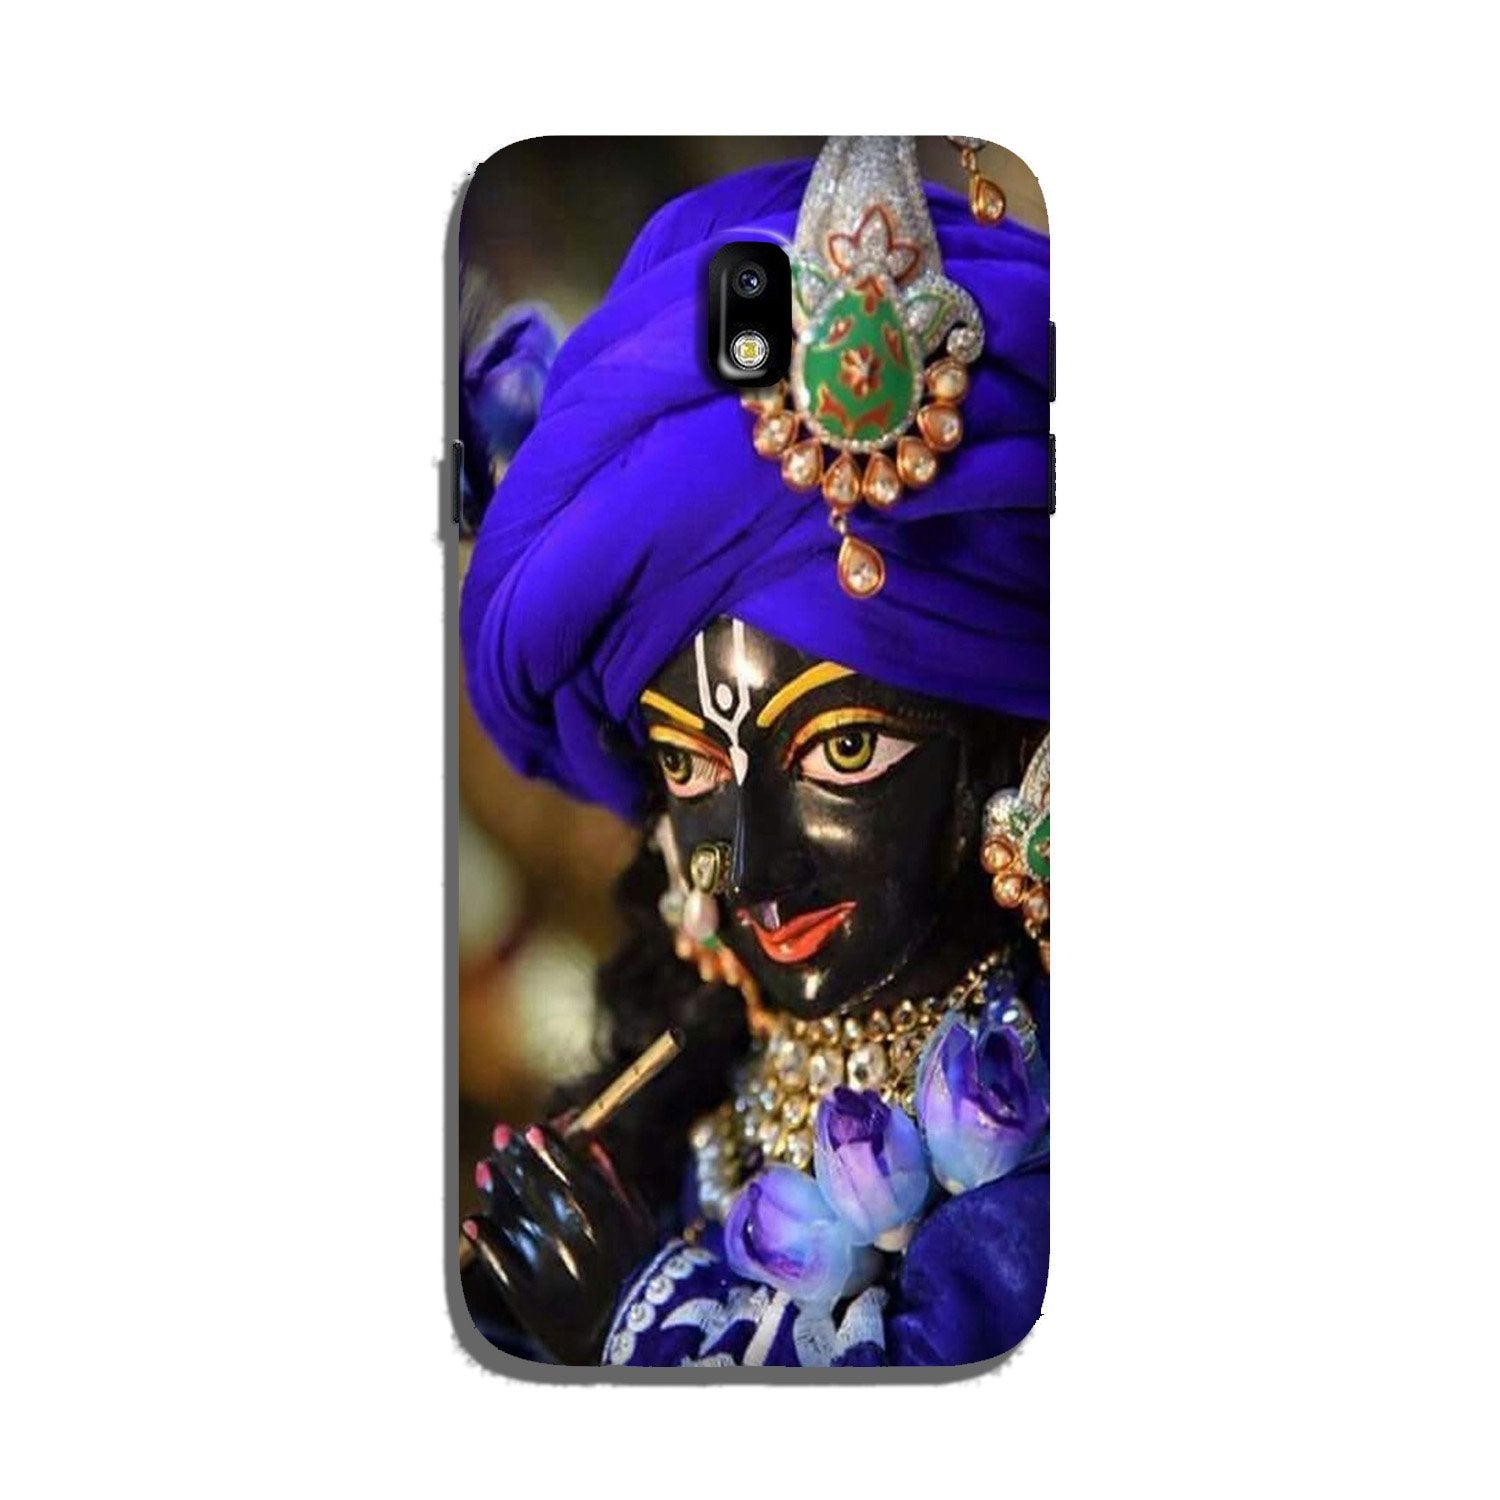 Lord Krishna4 Case for Galaxy J5 Pro